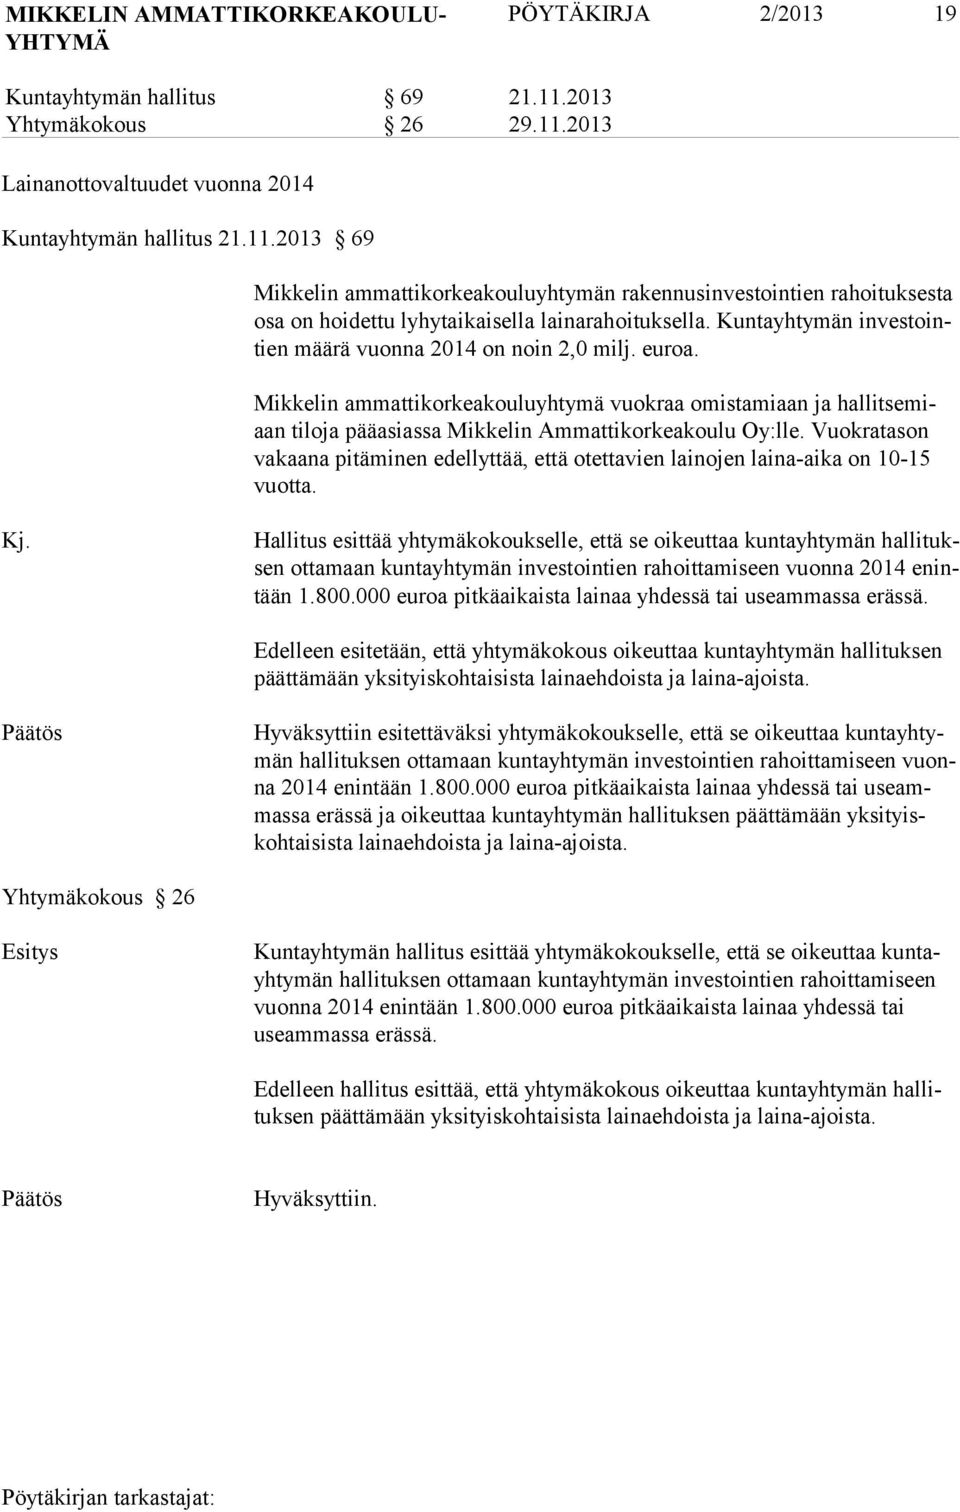 Kuntayhtymän investointien määrä vuonna 2014 on noin 2,0 milj. euroa. Mikkelin ammattikorkeakouluyhtymä vuokraa omistamiaan ja hallitsemiaan tiloja pääasiassa Mikkelin Ammattikorkeakoulu Oy:lle.